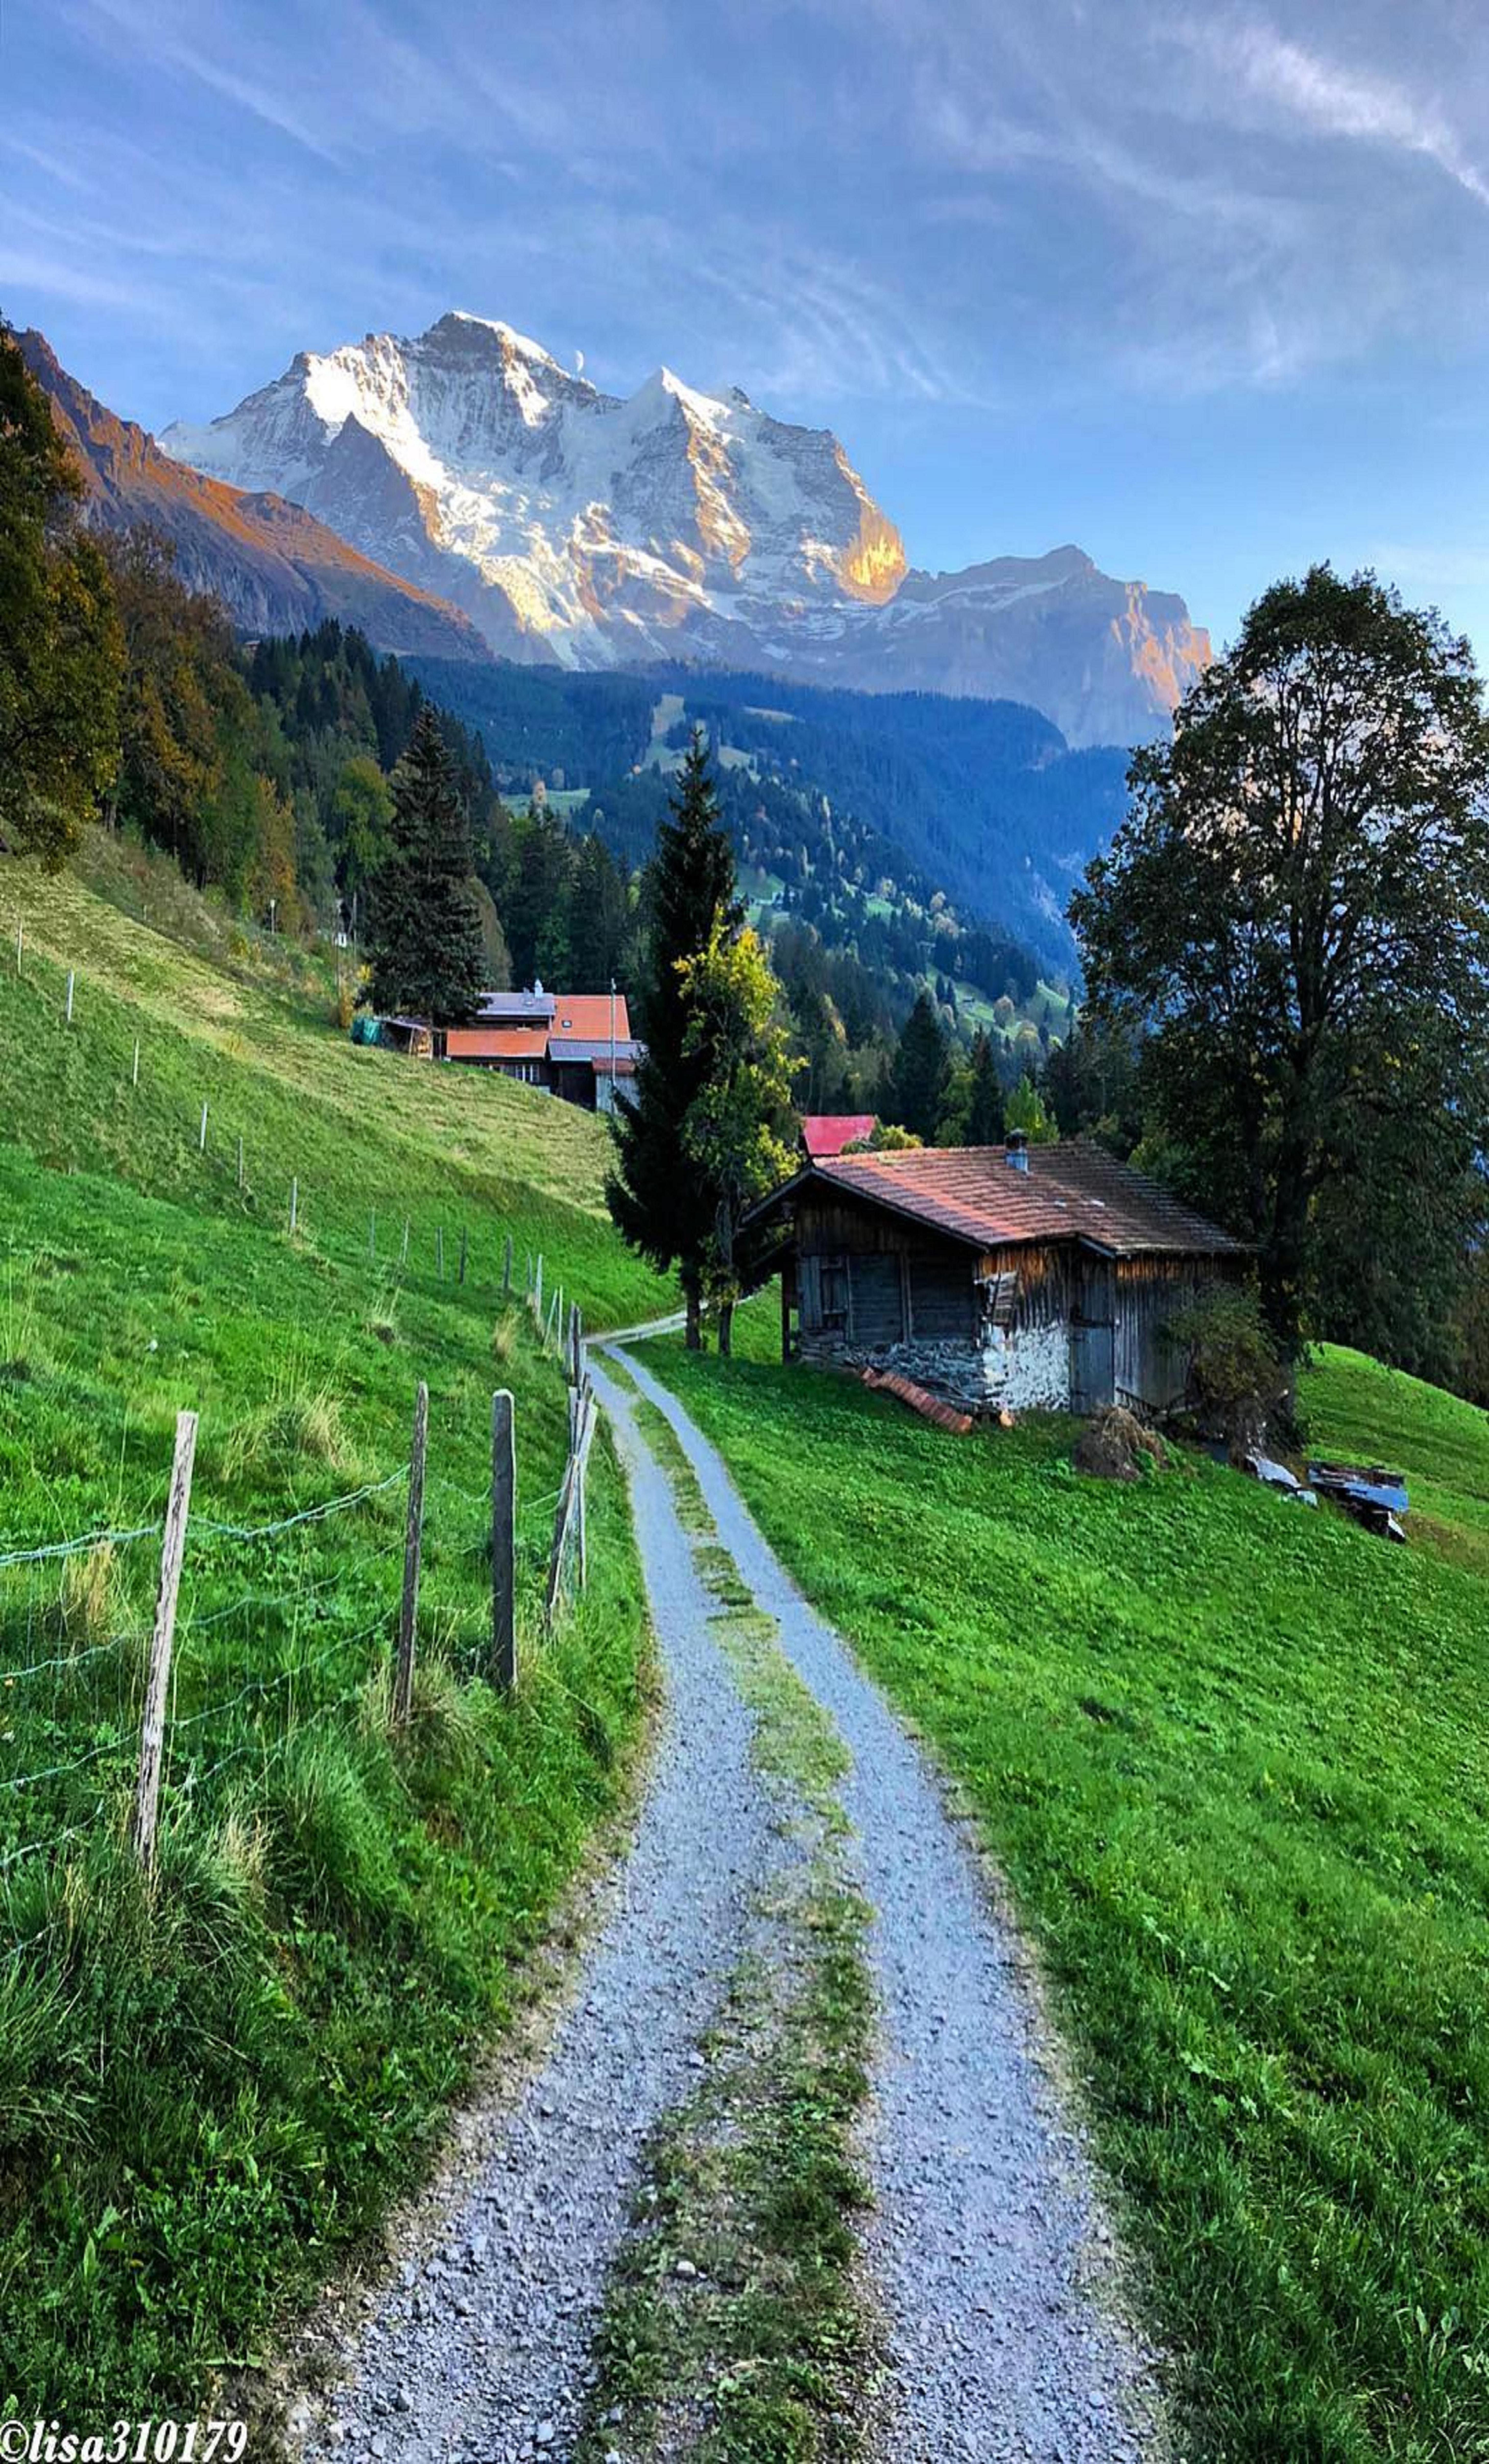 Switzerland. Beautiful nature, Scenery, Beautiful landscapes